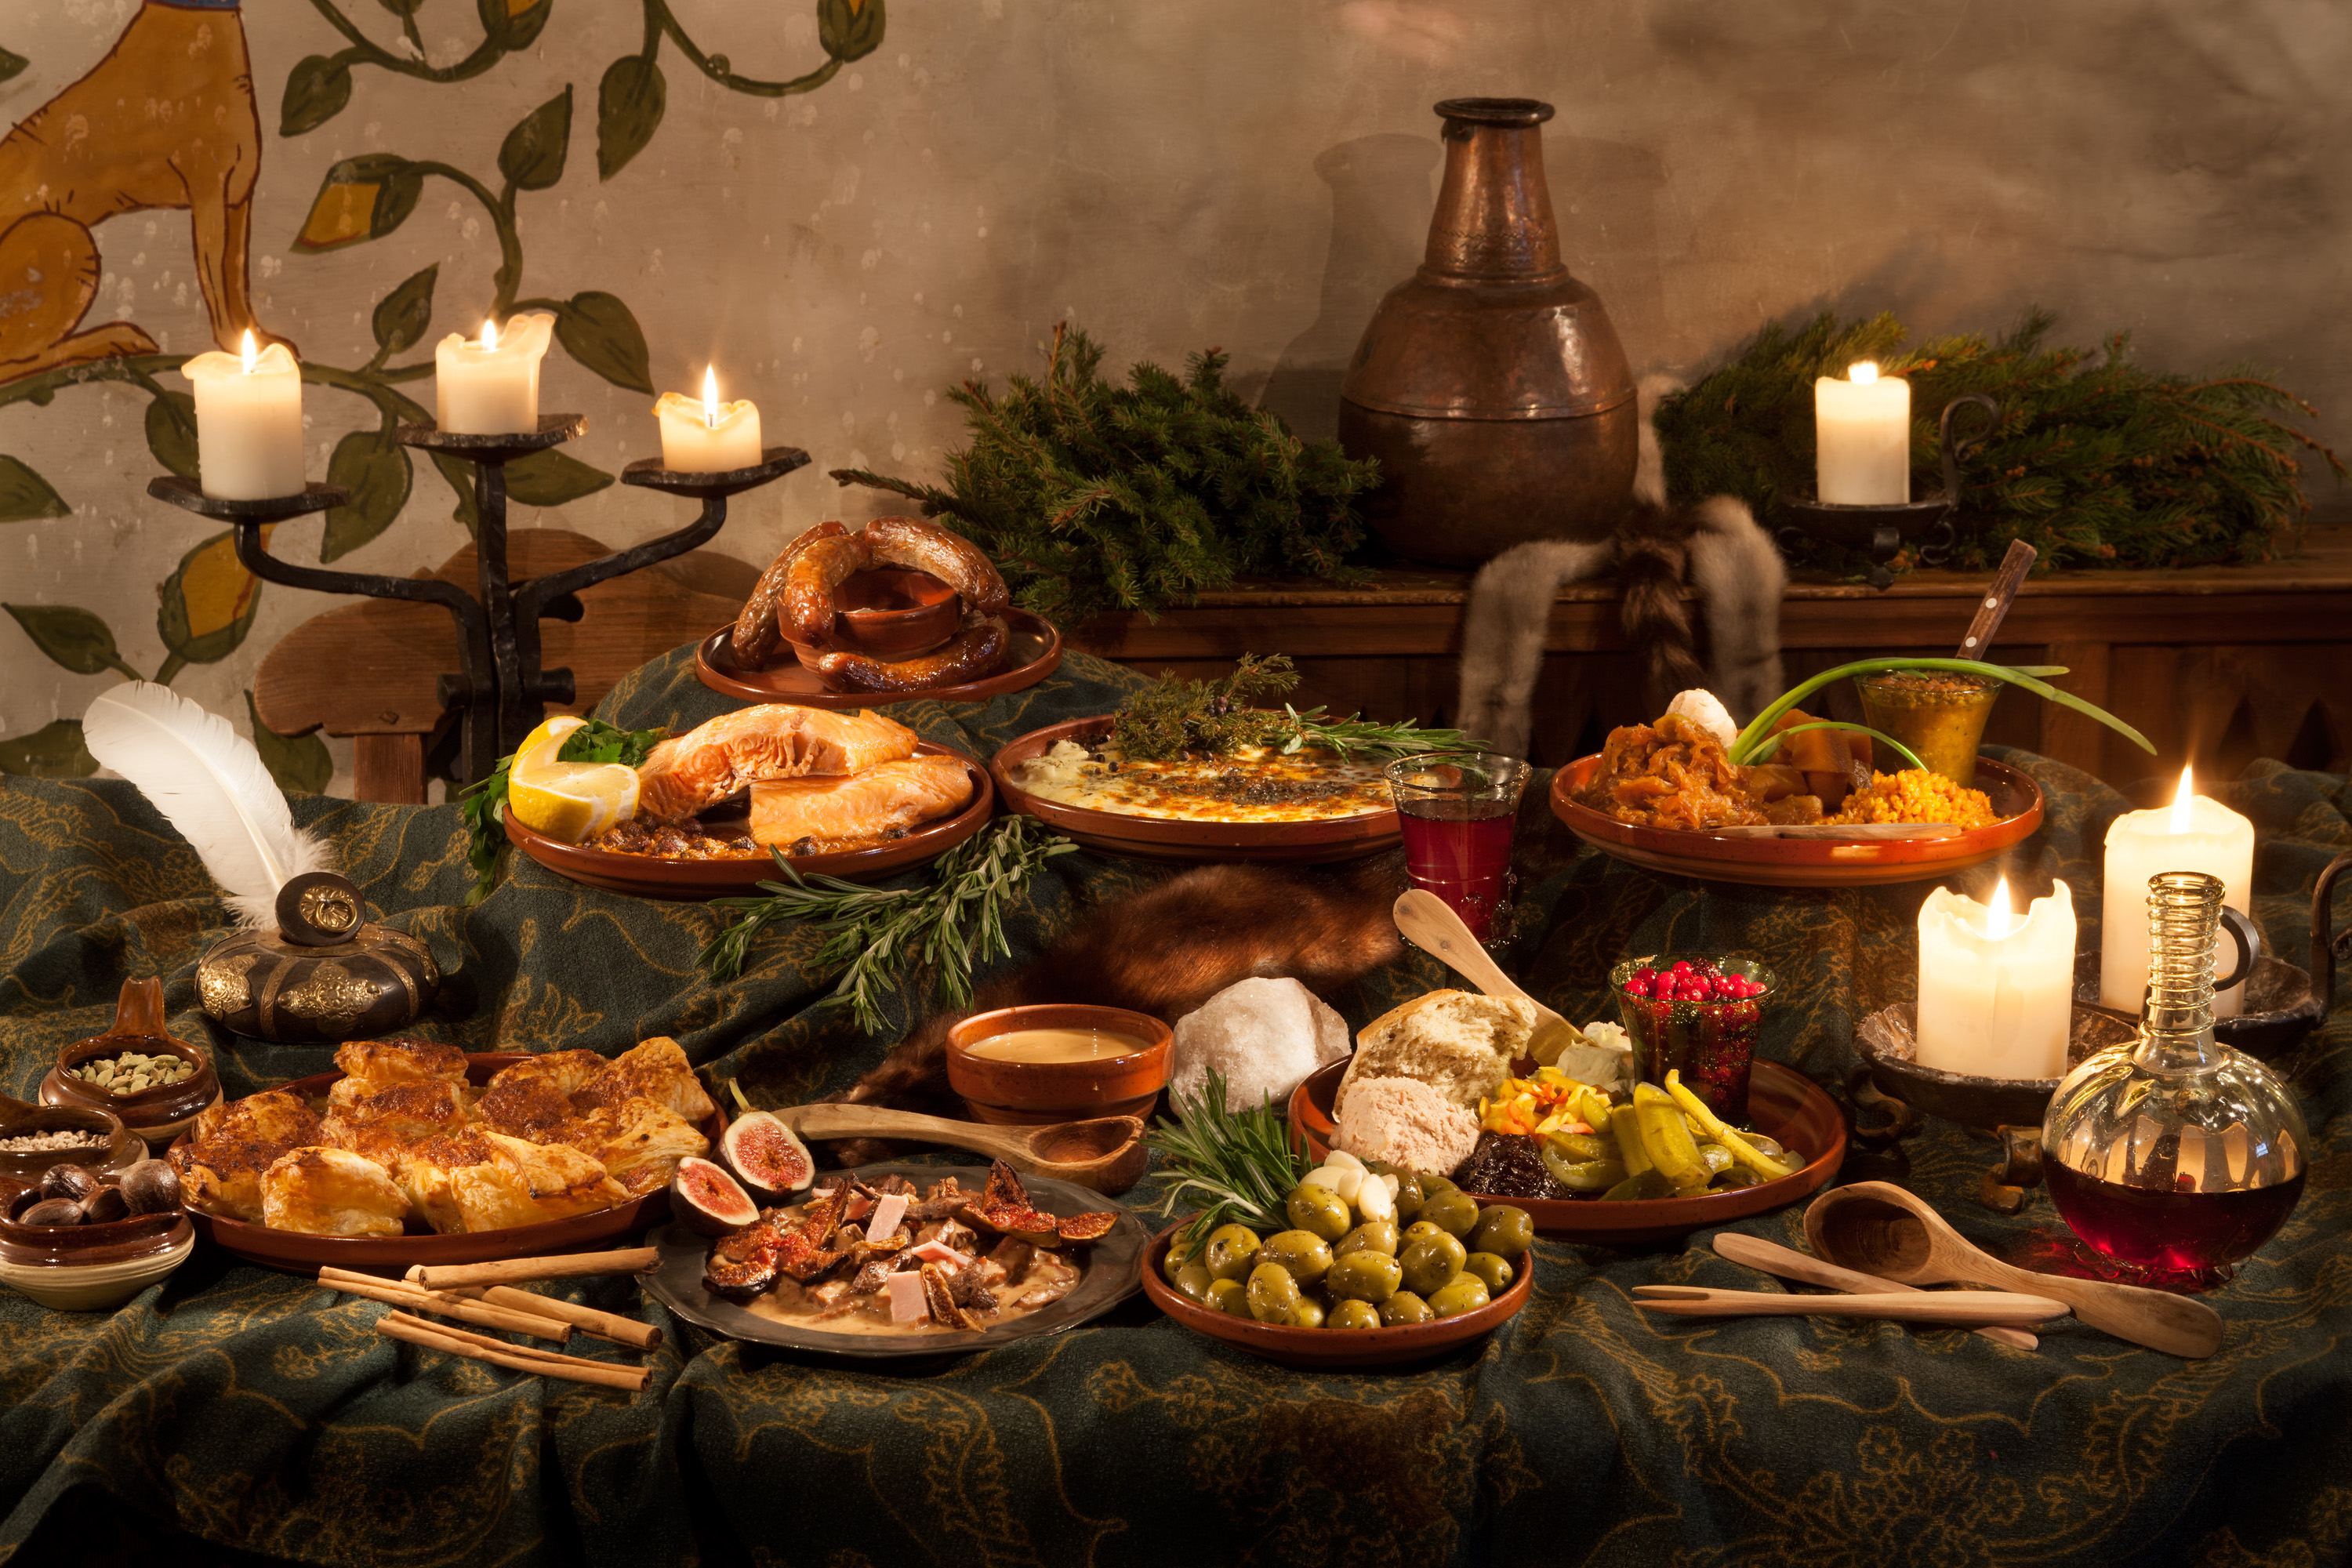 在中世纪的贵族宴会上能吃到什么?揭开中世纪各种盛宴美食!